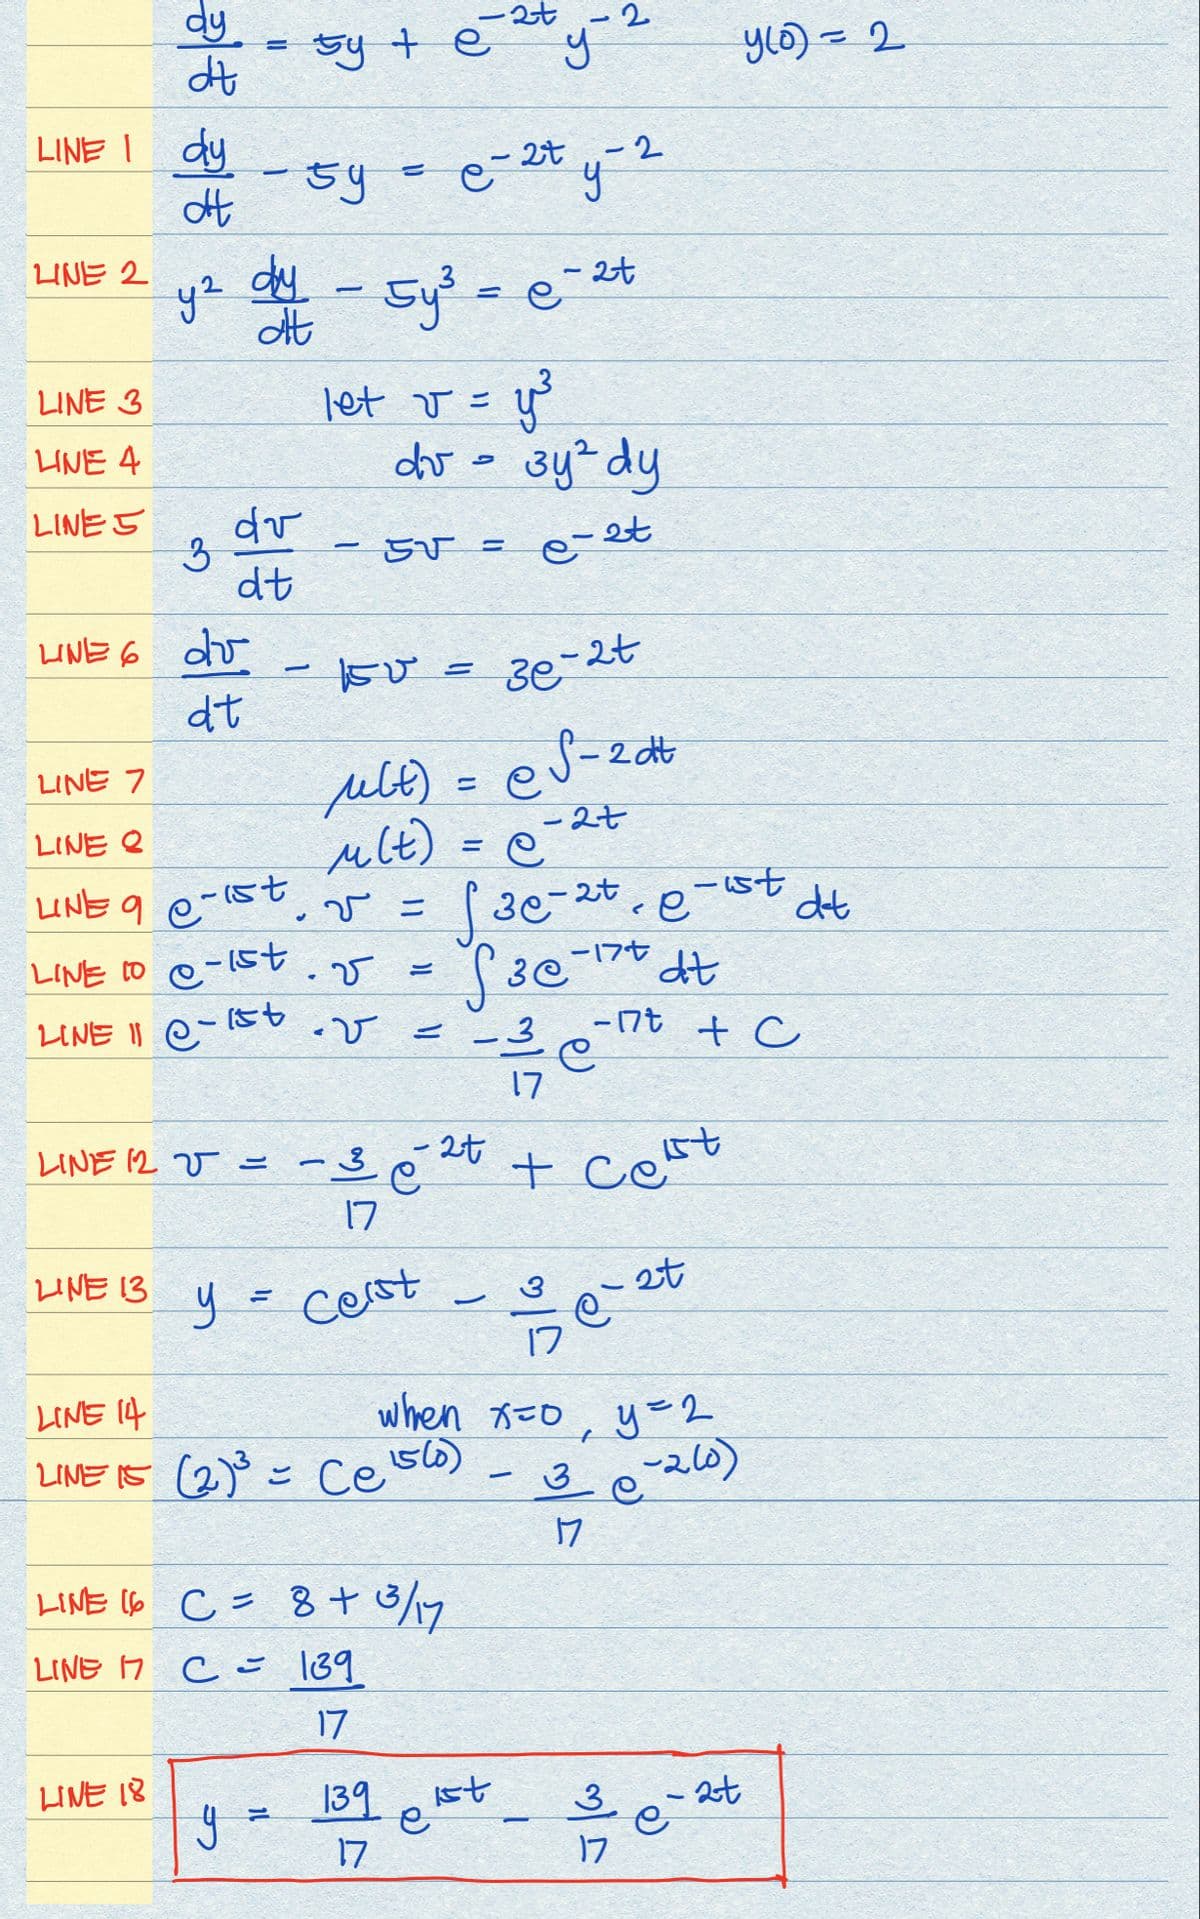 LINE I dy
dt
LINE 2
LINE 3
LINE 4
LINE 5
dy
dt
LINE 13
3
LINE 6 dr
dt
=
LINE 18
-
LINE 12 V =
y² dy - 5y²³ = e
-
dr
dt
-59
5
2t
sy + ²y ²
2
L
LINE 7
месе)
ult)
LINE Q
LINE 9 e-ist. √ =
LINE 10 e-1st. v
LINE 11 e-1st-v
1
-
=
let v = y²³
dv - 3y² dy
e-et
-
في .
5V =
150² = 3e-2t
1.7
y = cerst
e-2ty-2
=
LINE 16 C = 8 + 3/17
LINE 17 C= 139
17
139
17
LINE 14
LINE 15 (2)³ = Ce 15 (0)
=
- 2t
e
=
e
f3c-2+, e-ust dt
S³e
-17t
dt
2t
es-2dt
-2t
ist
--3/1/201²
17
-C²-2
when x=0, y = 2
-260)
-
-17t
+ Cest
3
17
2t
e
y(0) = 2
+ C
3/20
2t